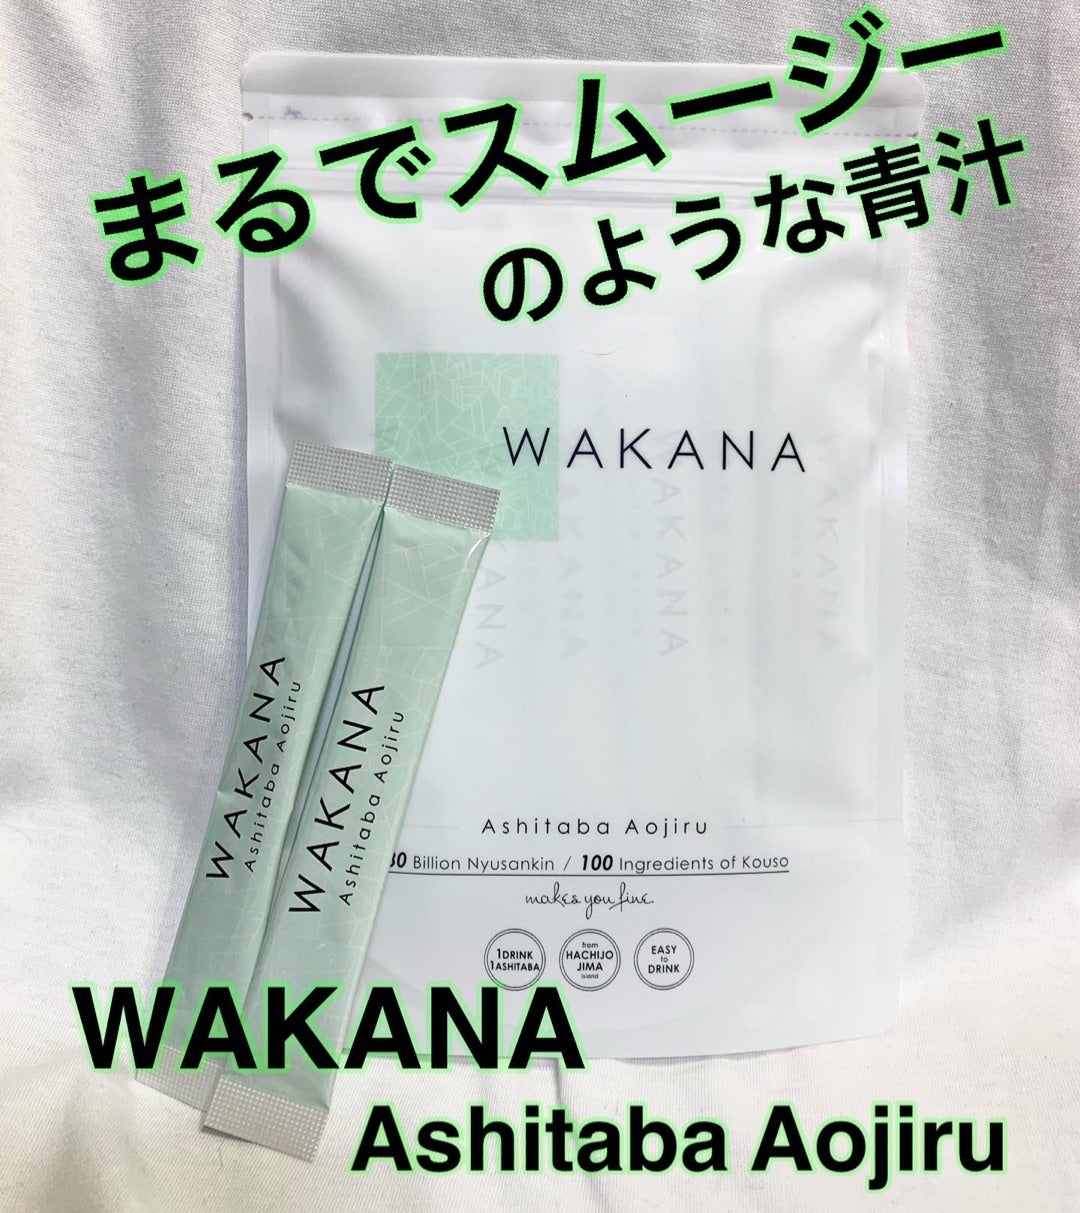 wakana 青汁